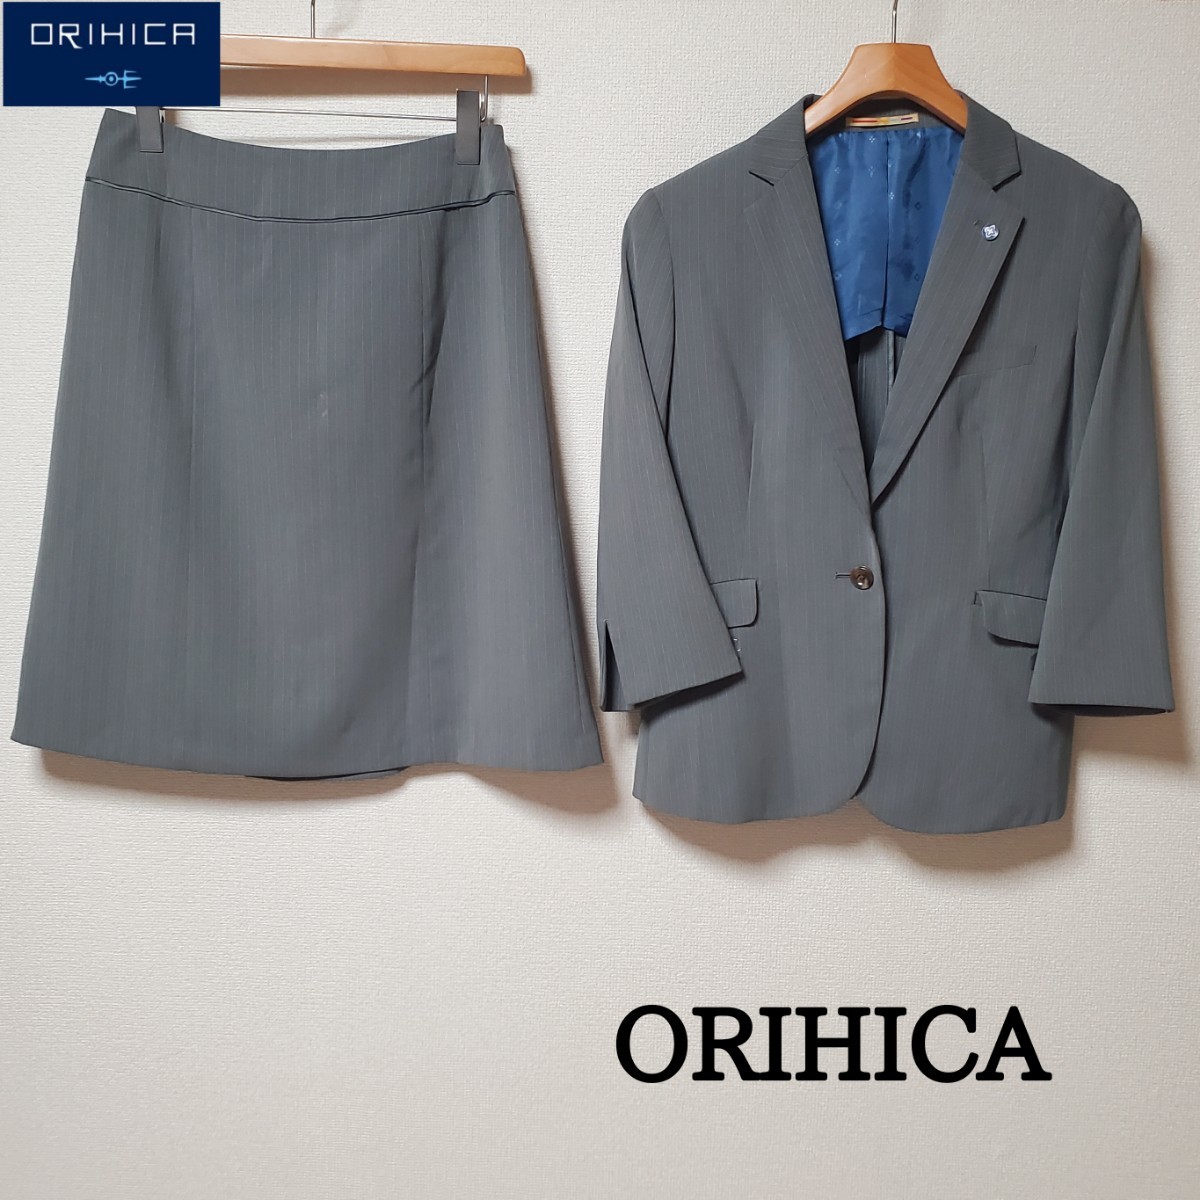 ORIHICA オリヒカ レデース スカートスーツ セットアップ グレー 春夏 - 8